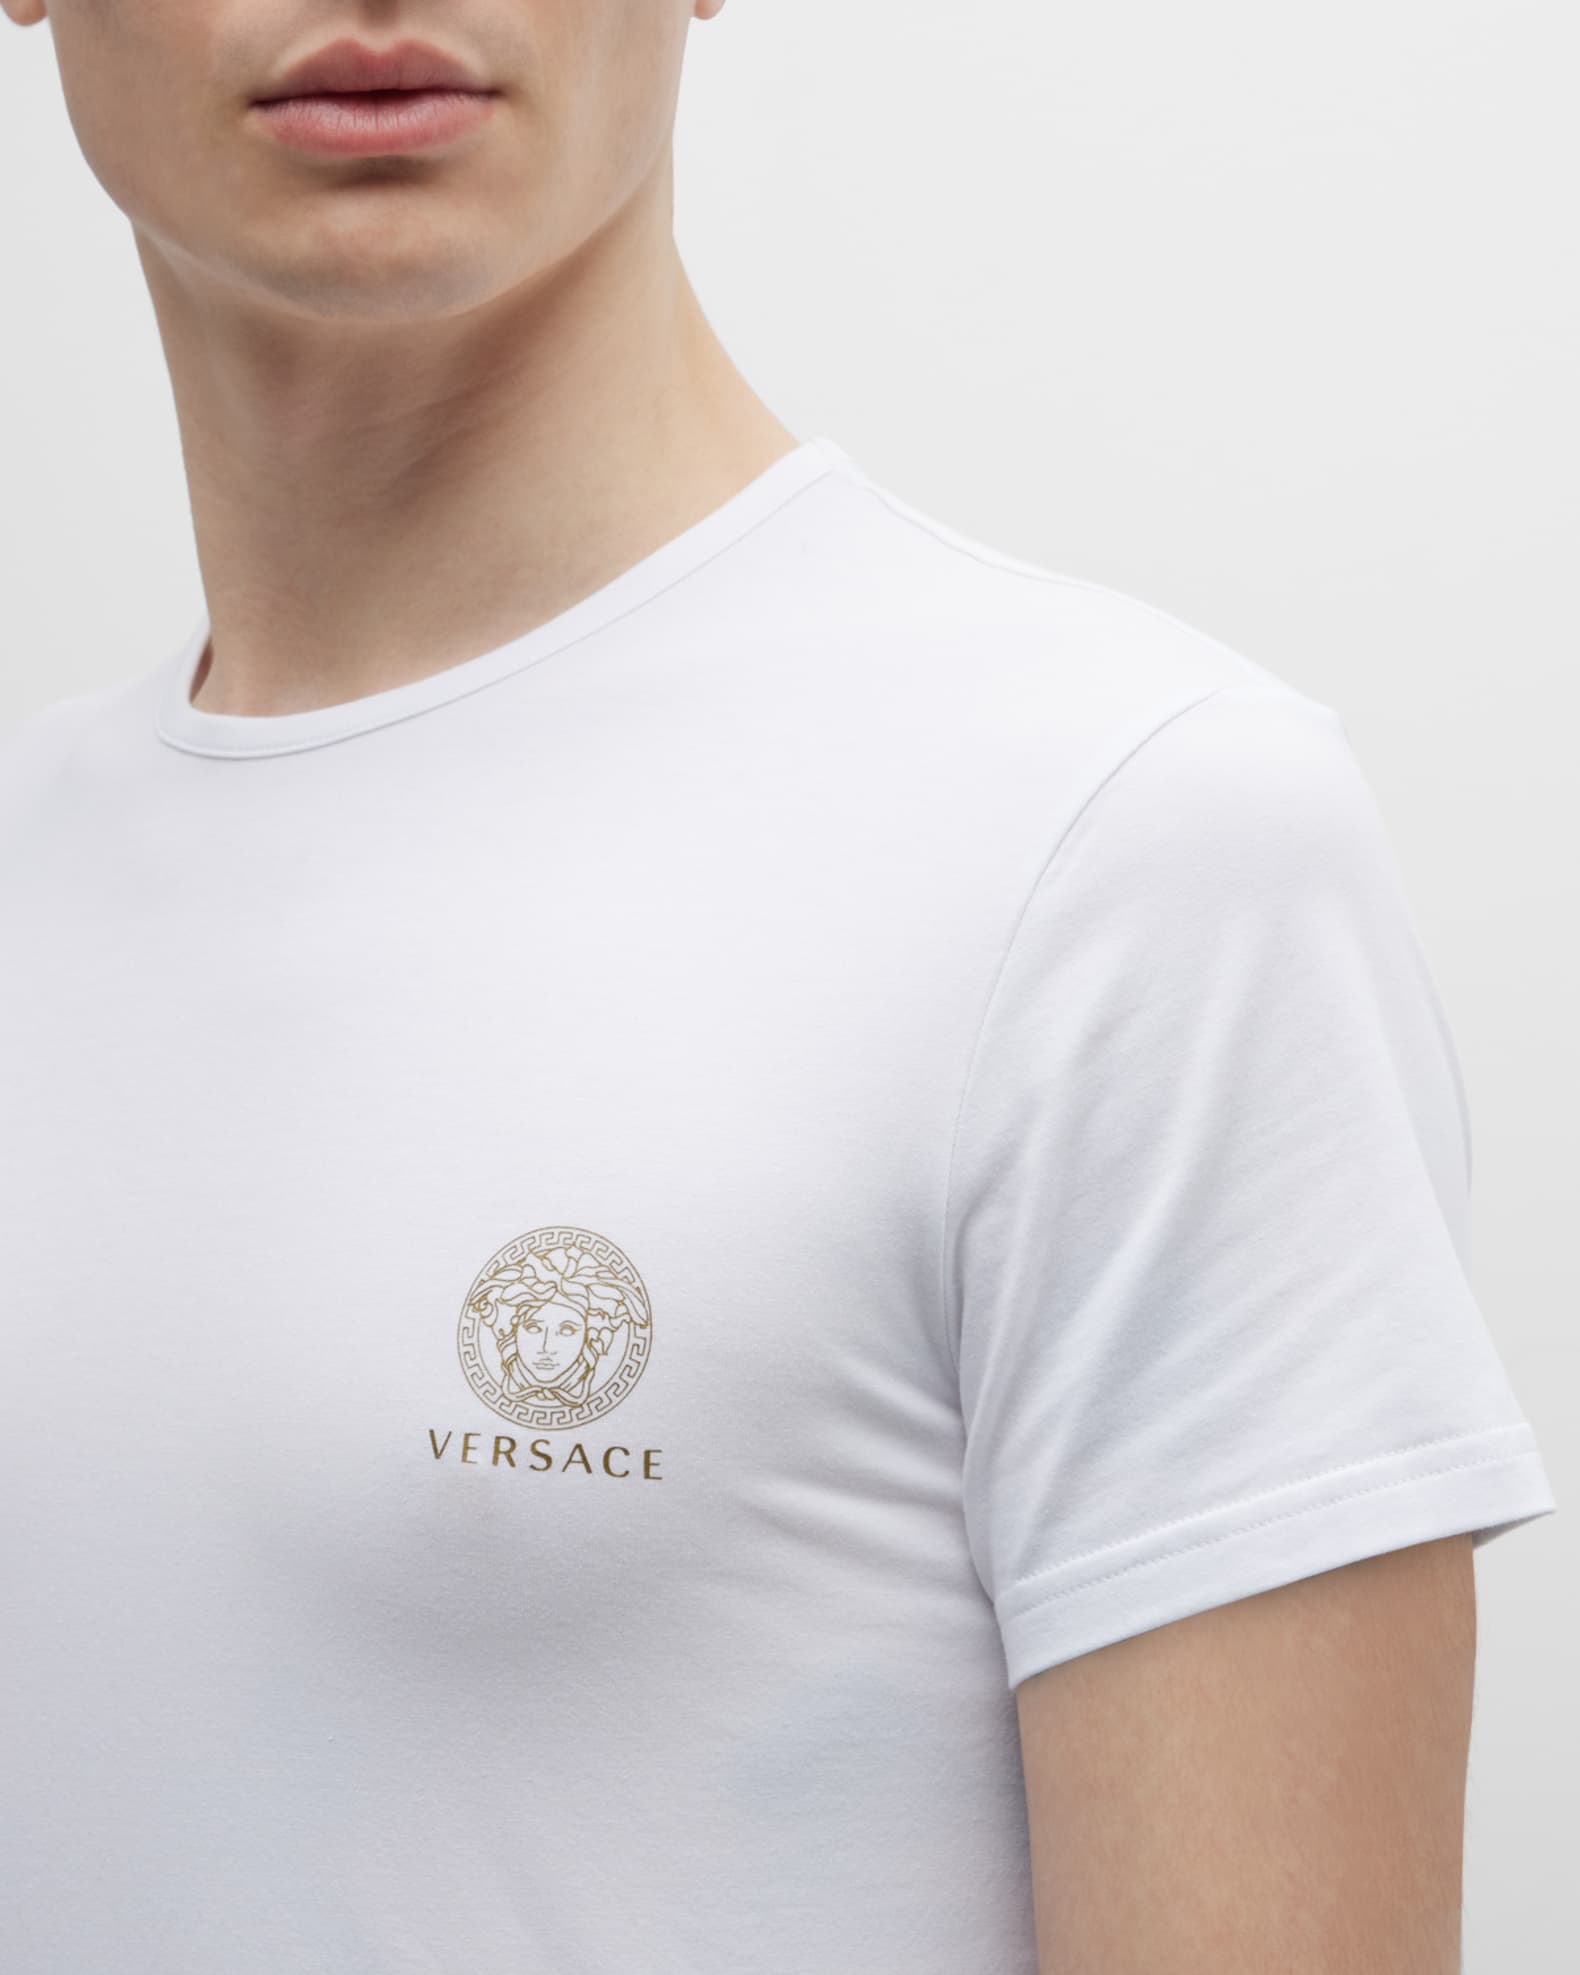 Gedragen fusie ga zo door Versace Men's 2-Pack Medusa Head Logo T-Shirt | Neiman Marcus